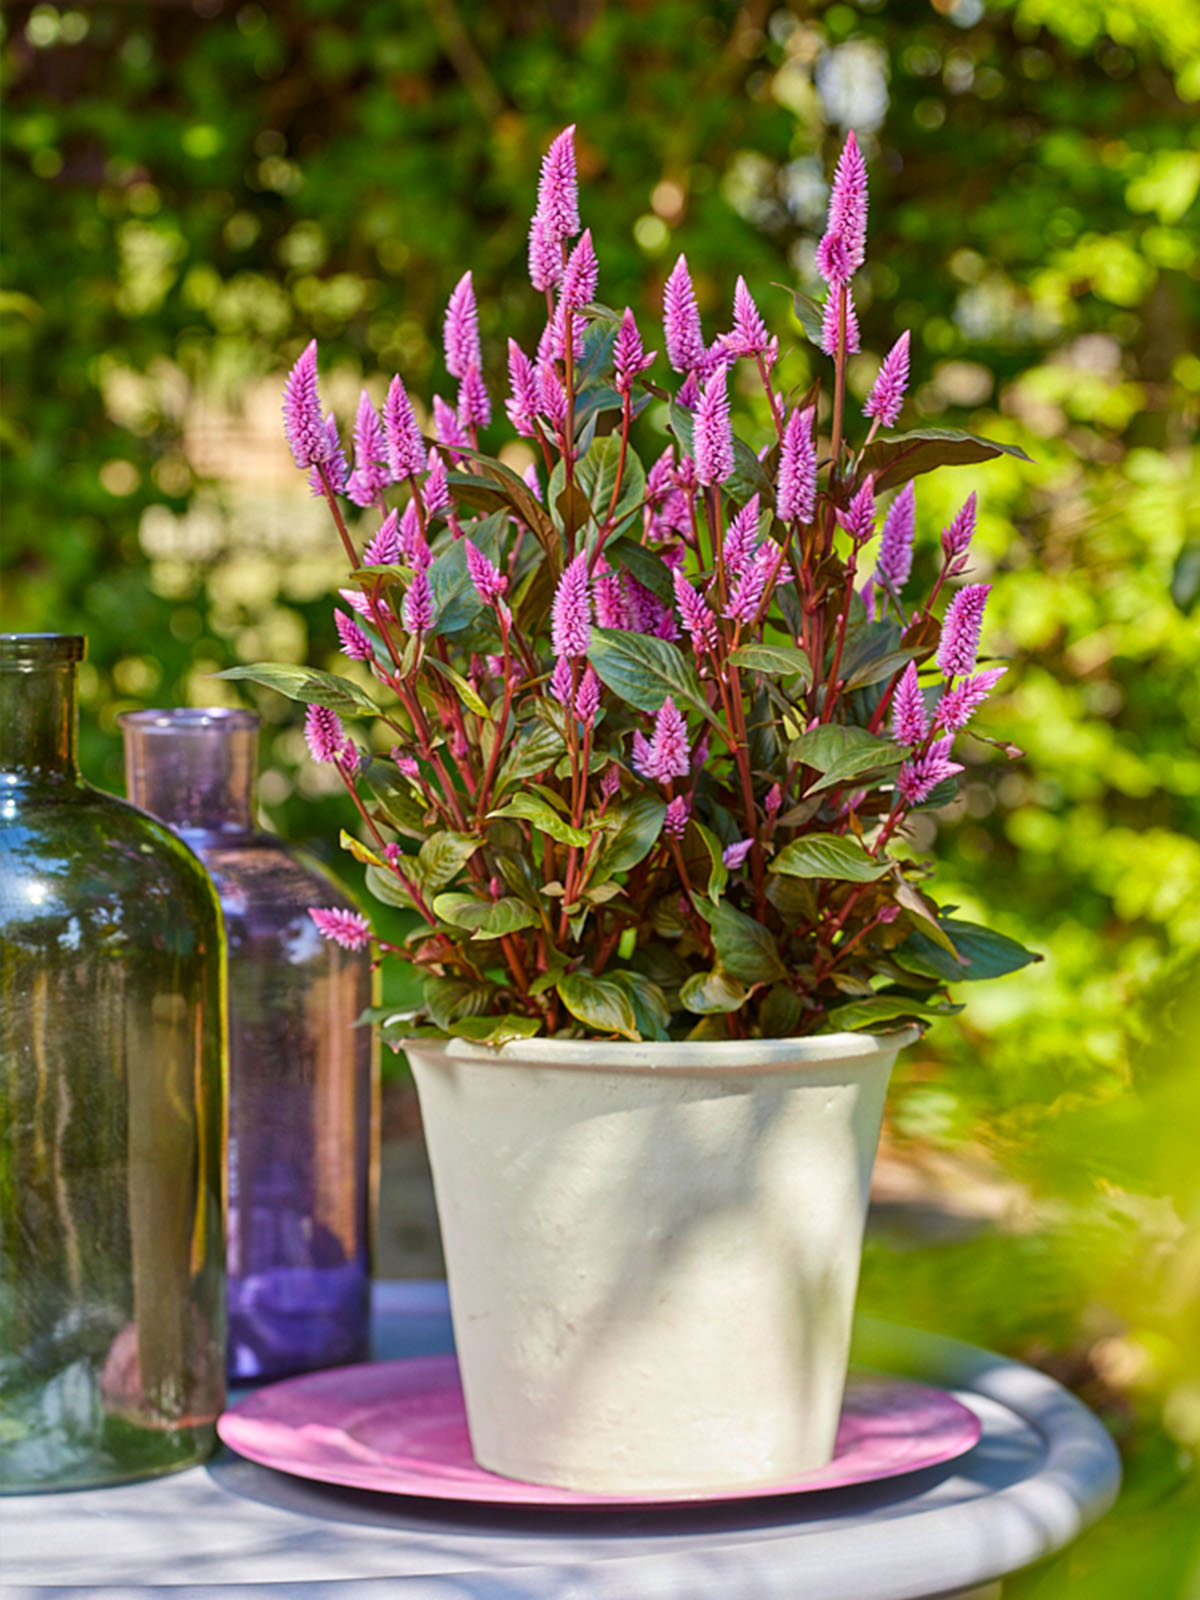 Wild Celosia pot plant - on Thursd